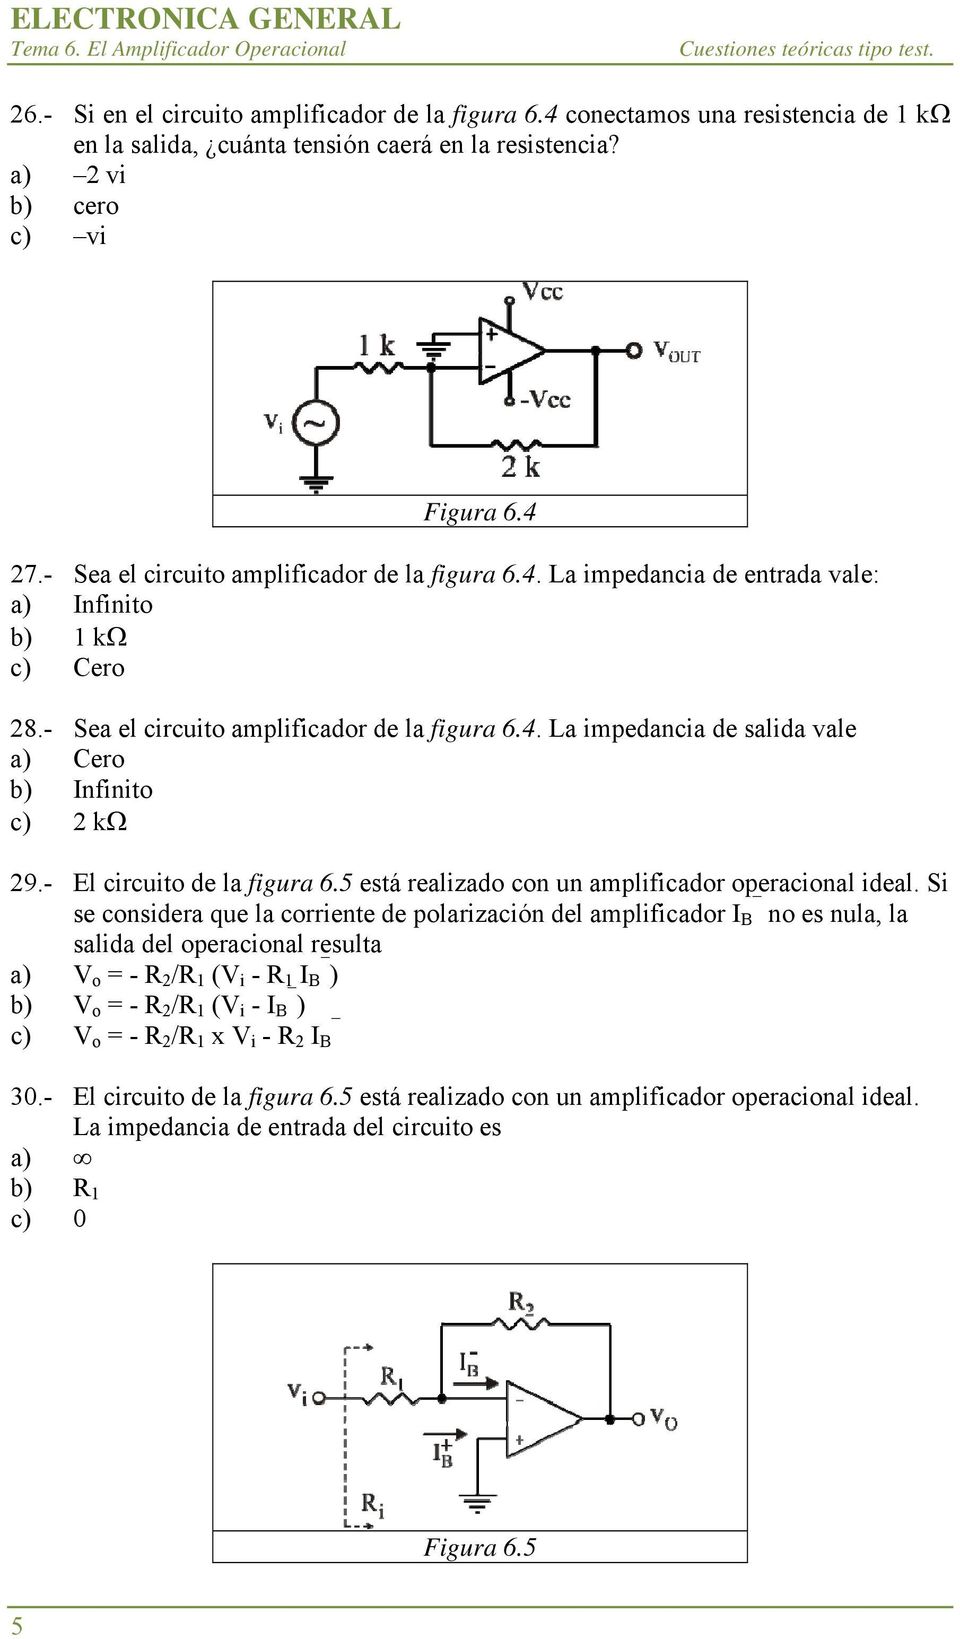 - El circuito de la figura 6.5 está realizado con un amplificador operacional ideal.